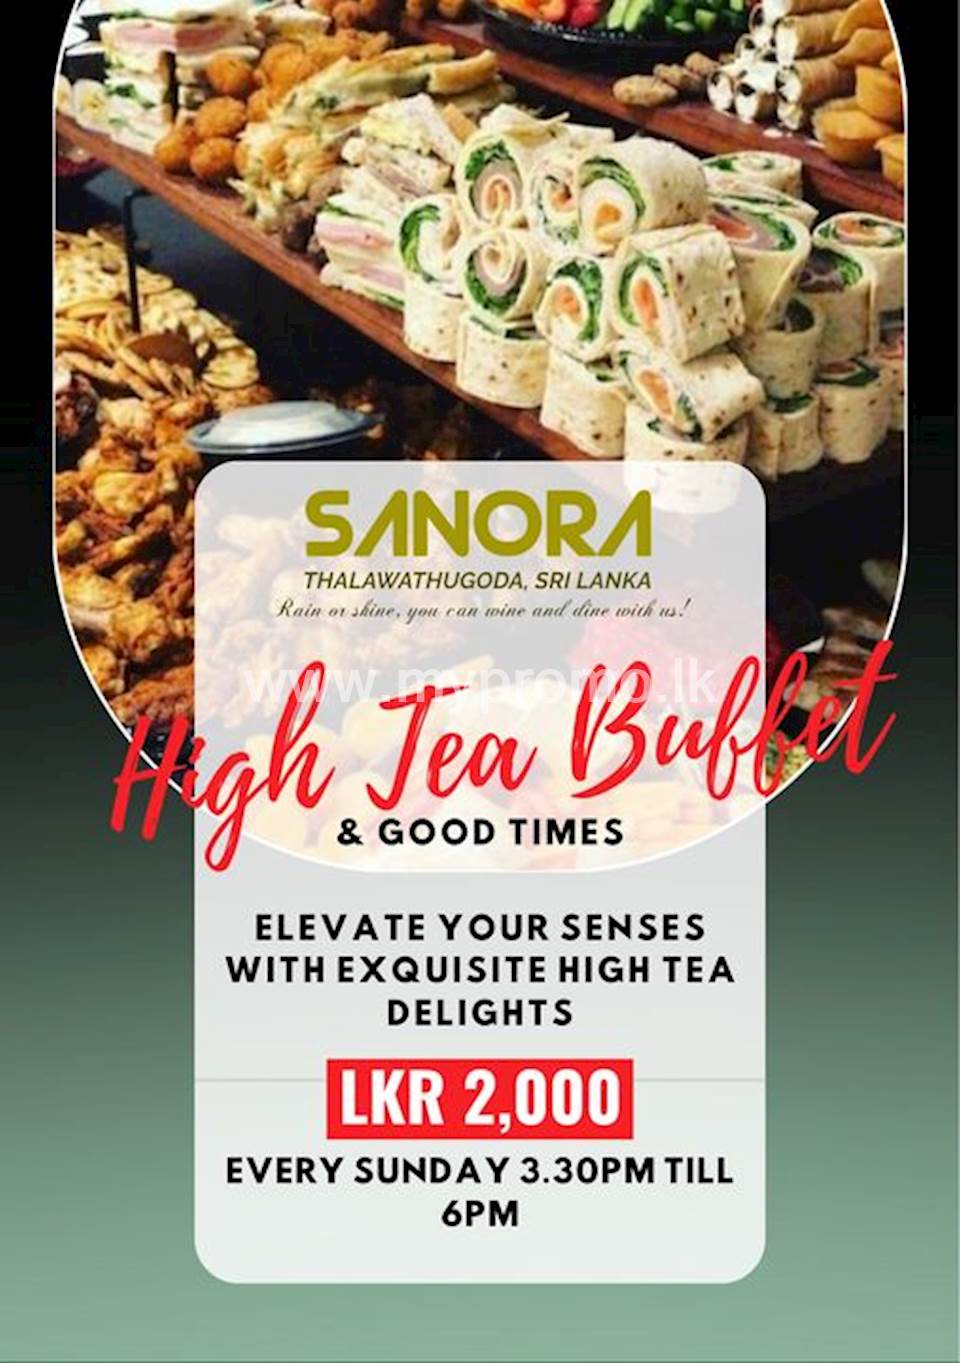 High-Tea Buffet at Sanora Restaurant